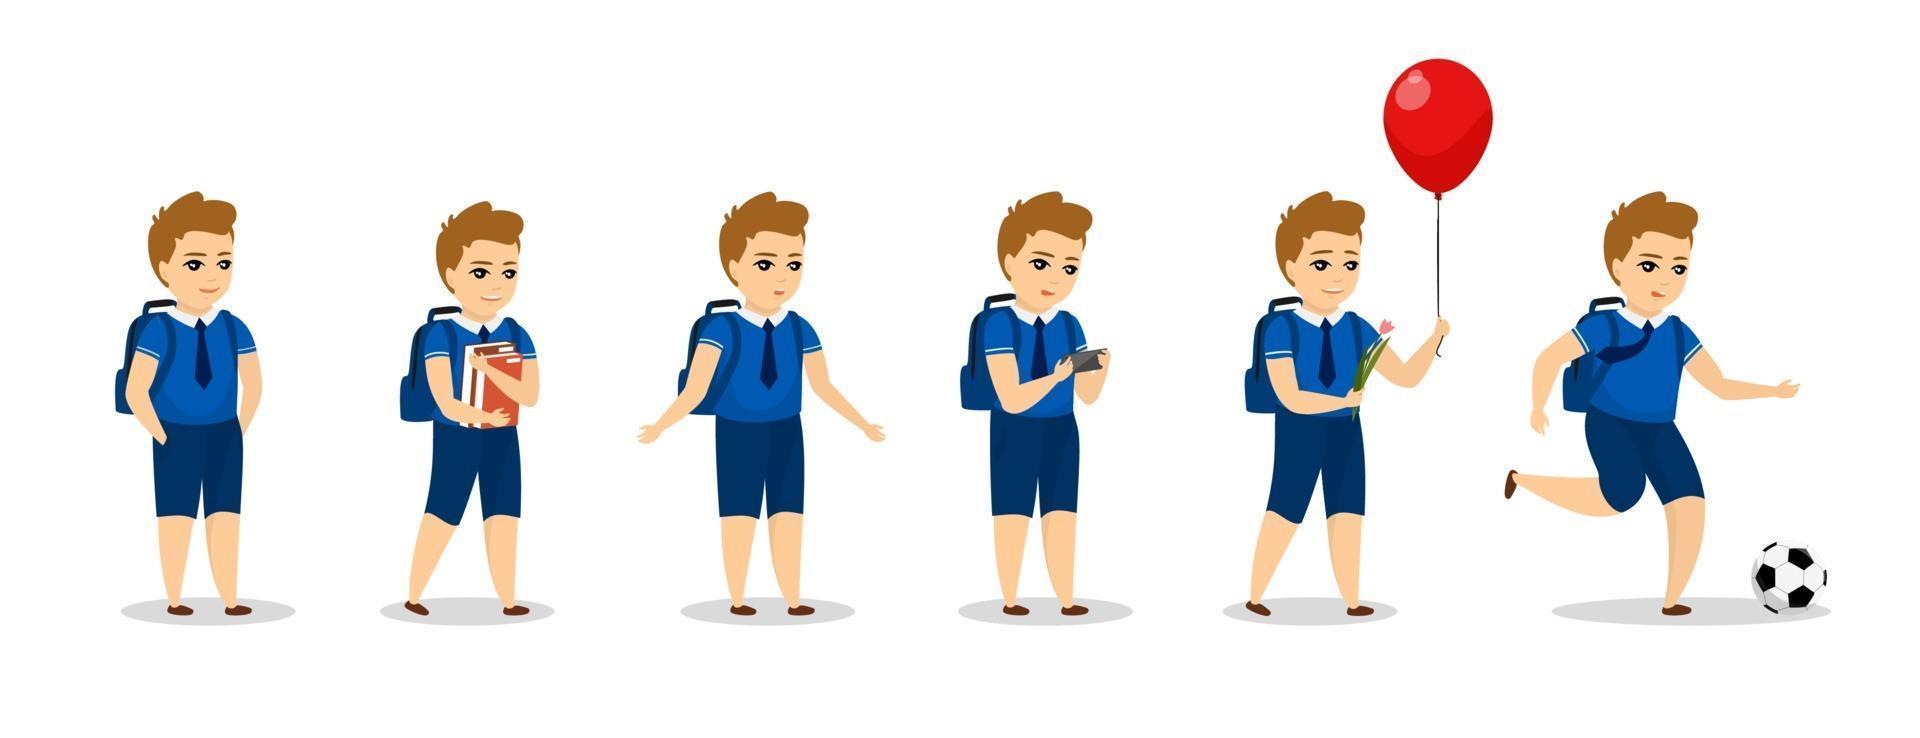 skolpojke unge karaktär olika poser. söt tecknad pojke i uniform vektor